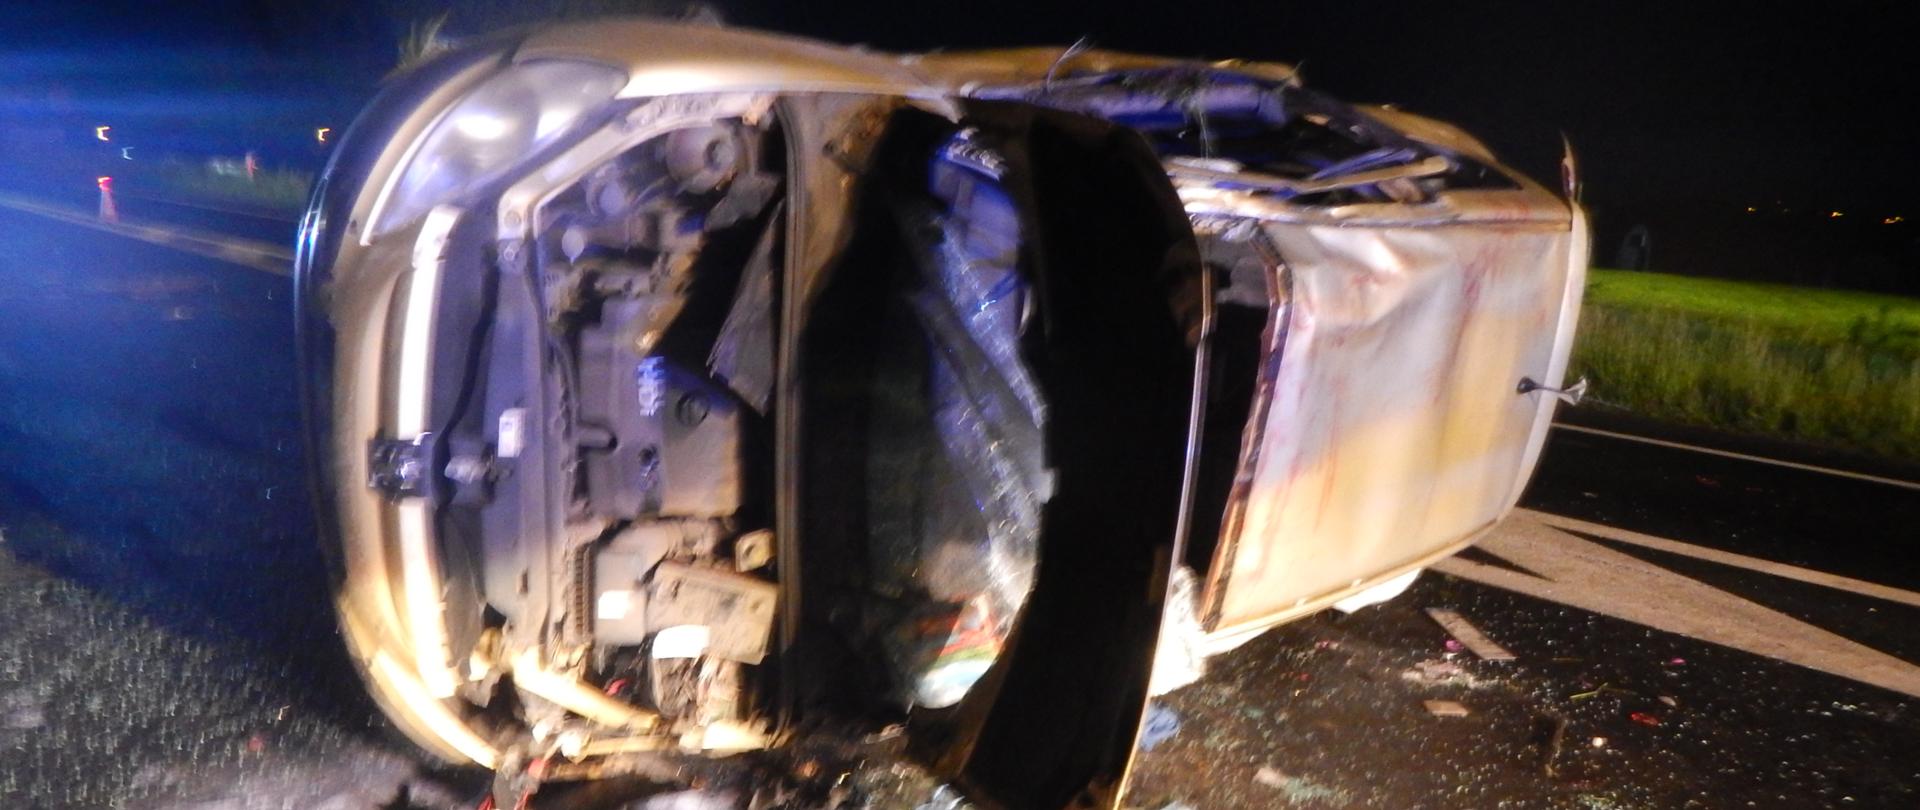 Zdjęcie przedstawia srebrny samochód po wypadku drogowym. Samochód leży na drodze na lewym boku.